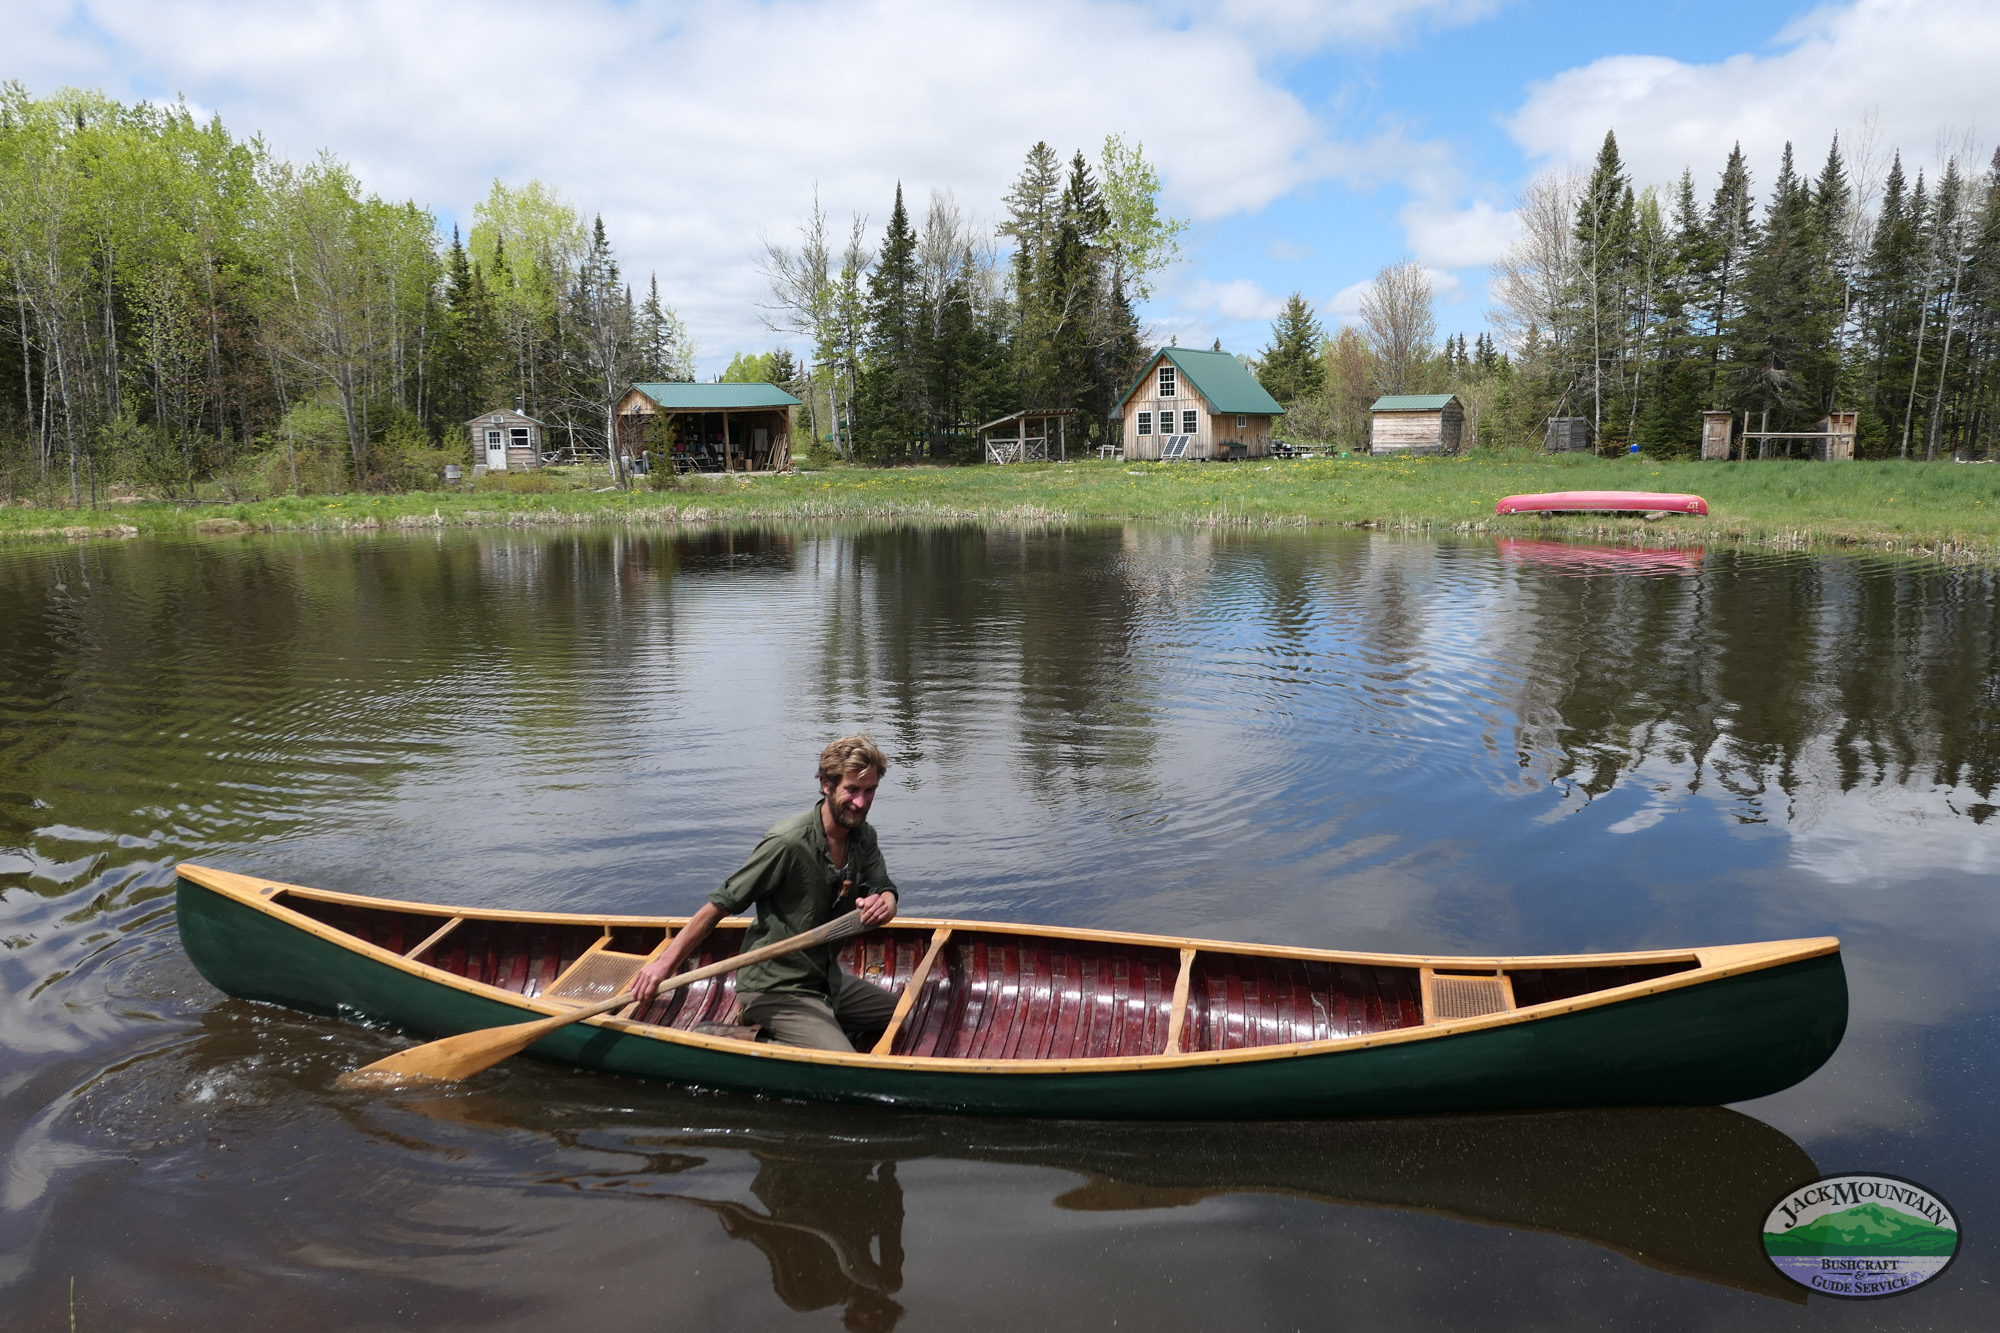 Christopher in his EM White canoe.